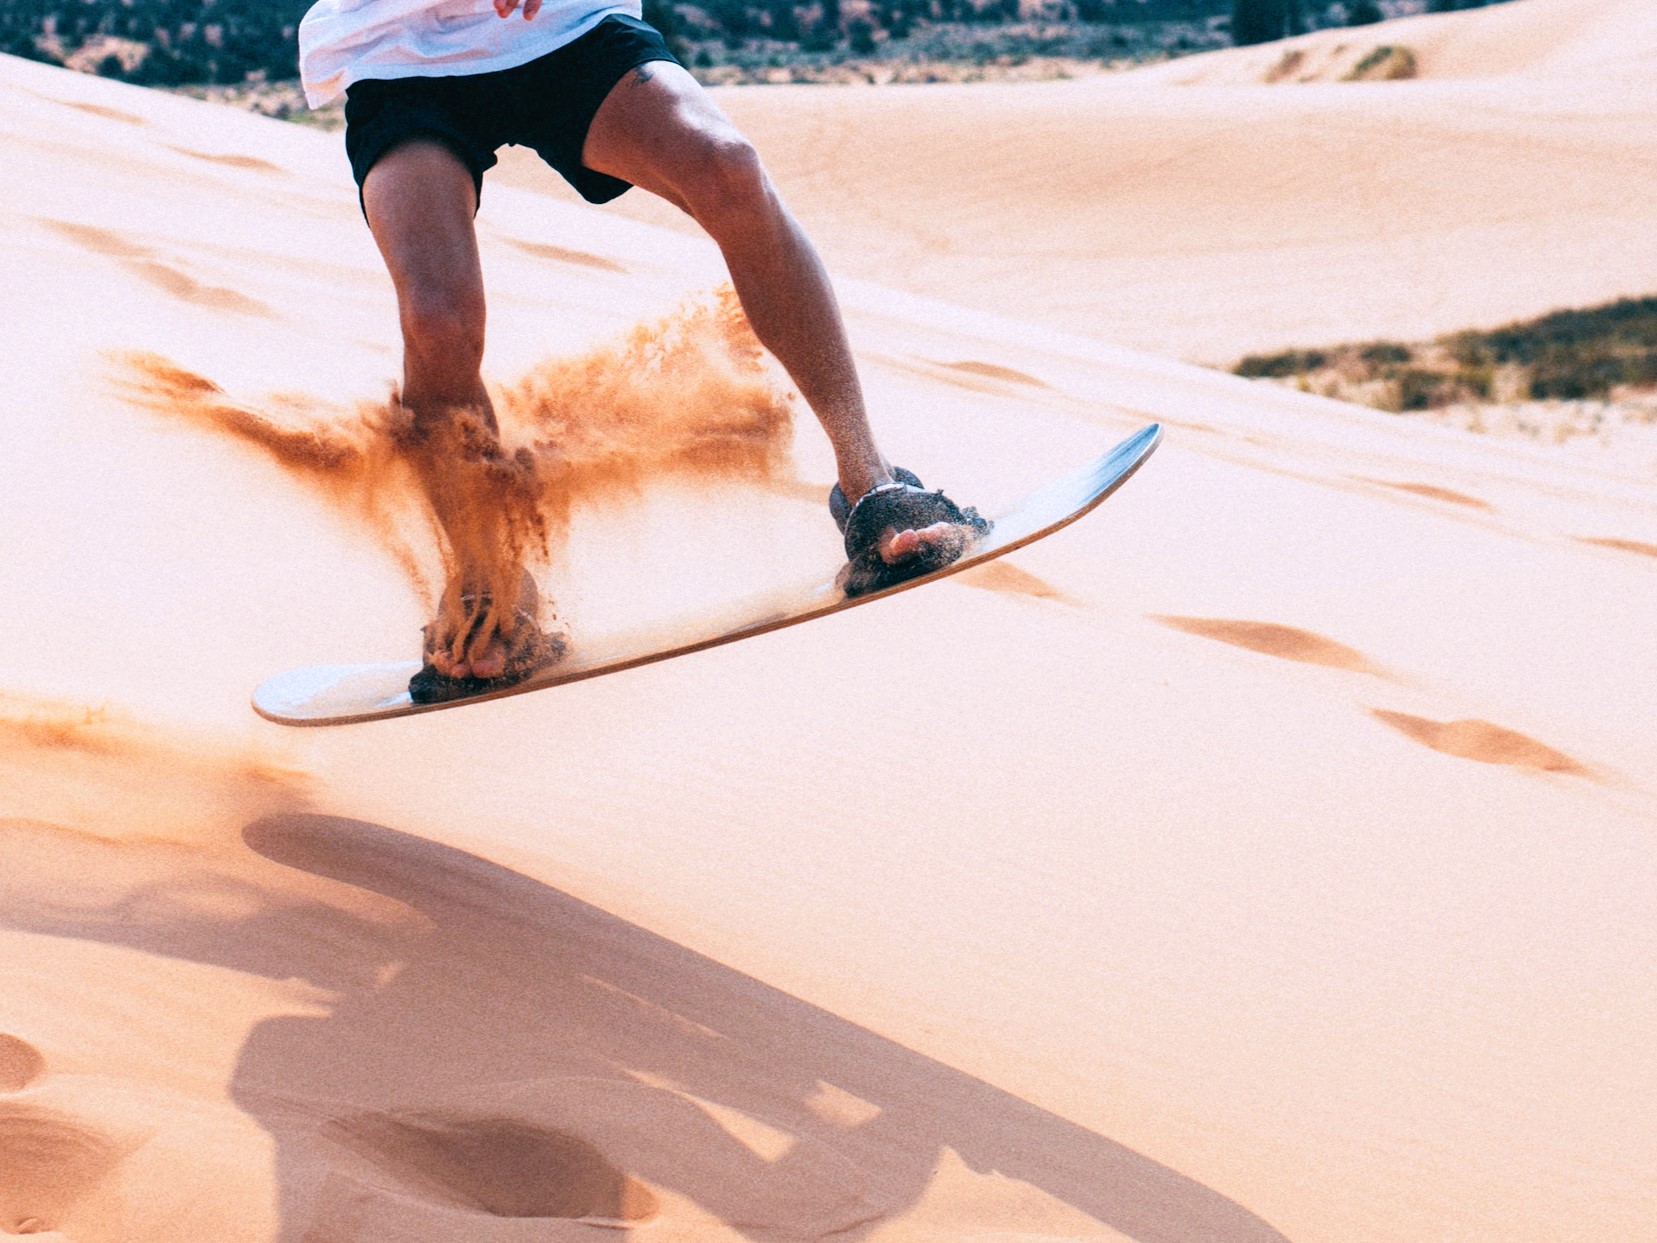 Mensch beim Sandboarding